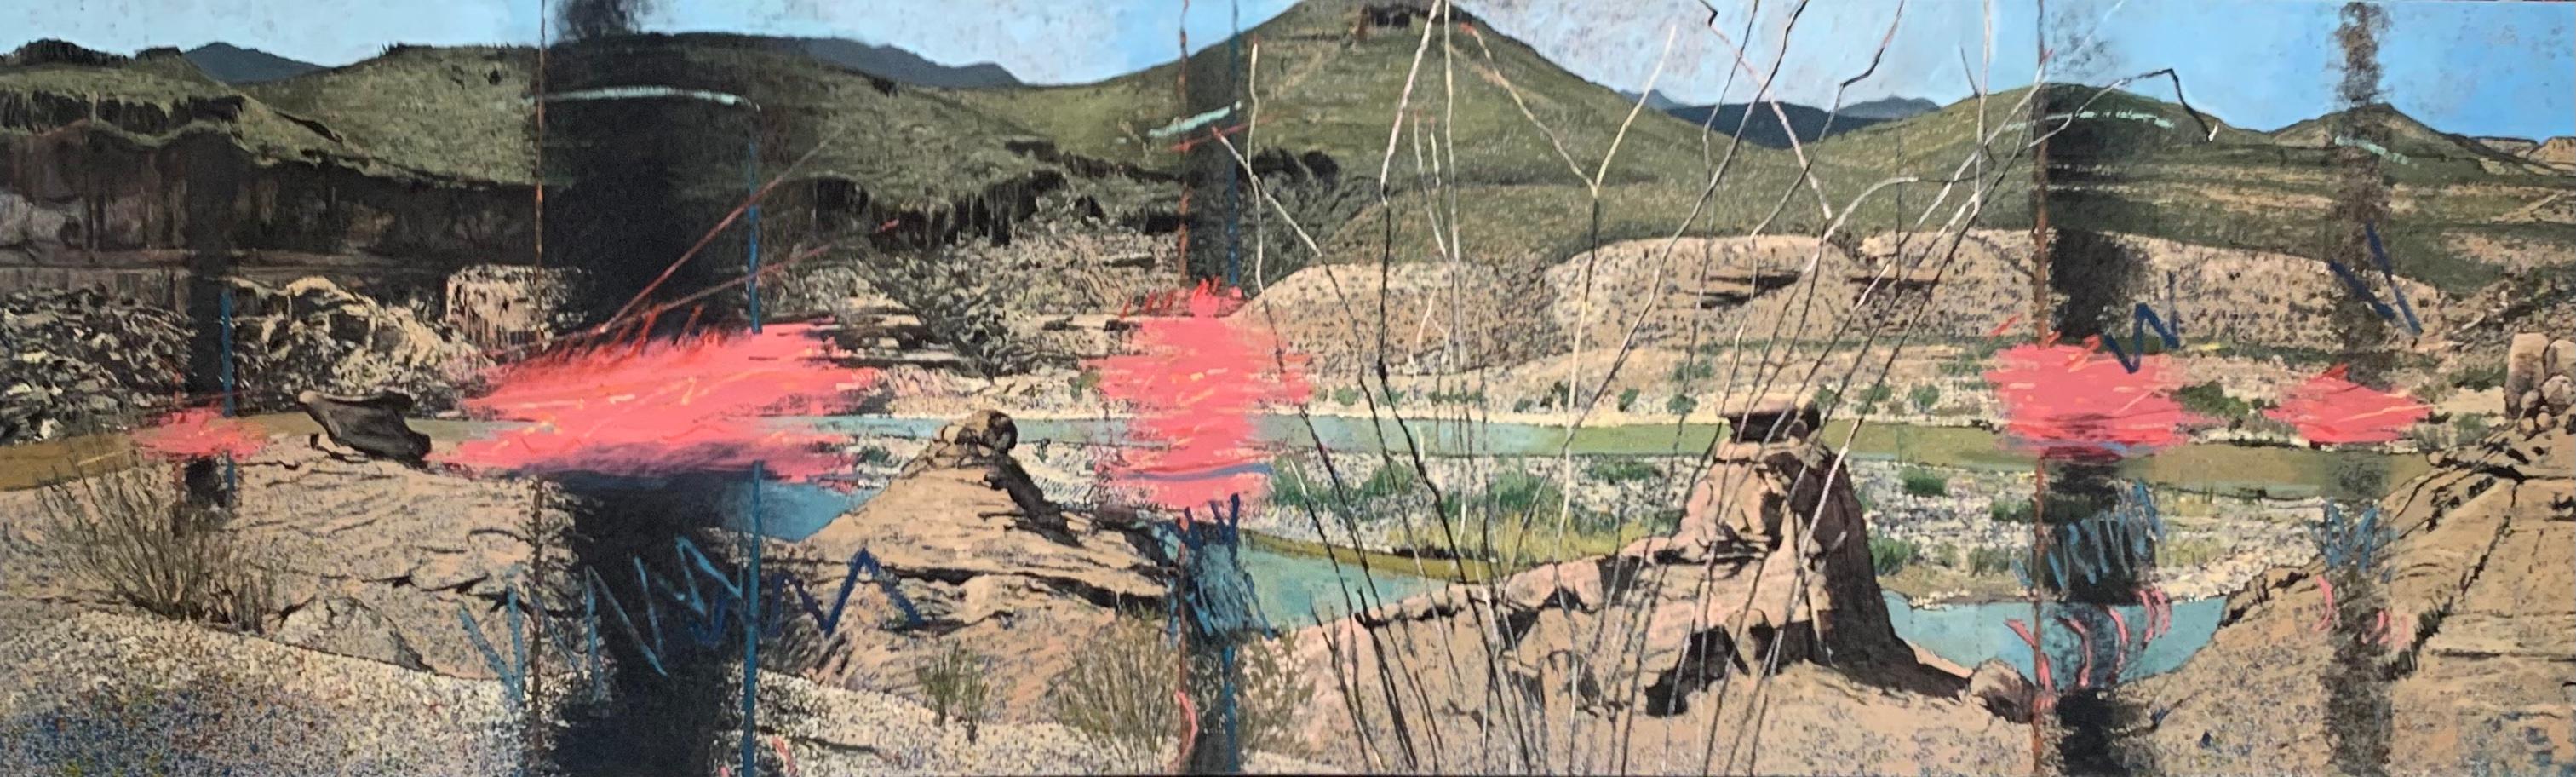 Landscape Painting Jim Woodson - Peinture à l'huile d'un paysage abstrait